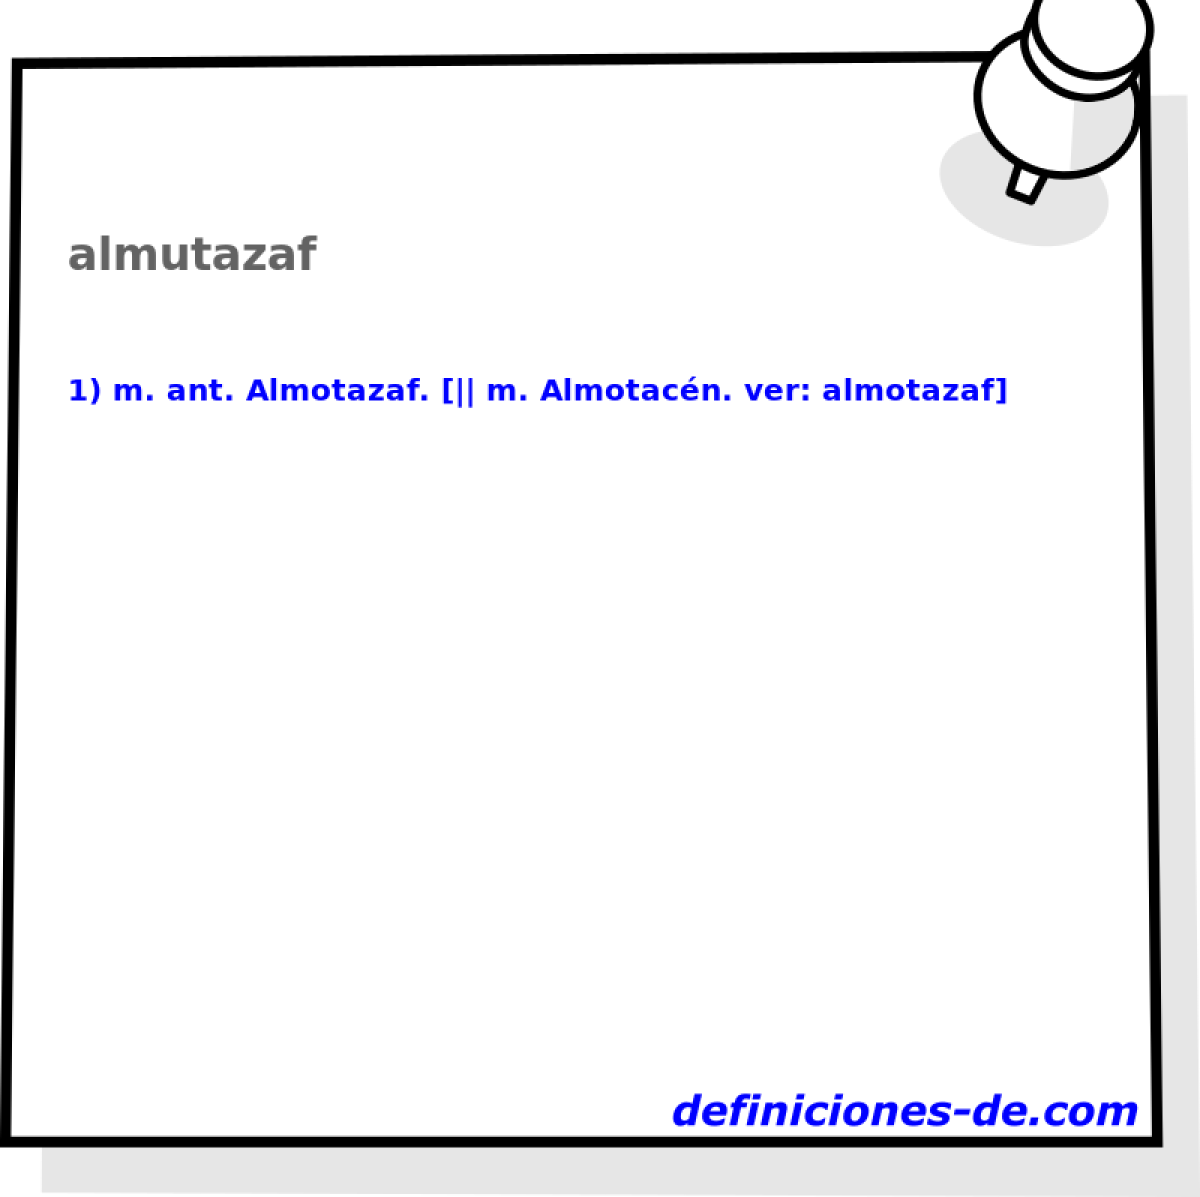 almutazaf 